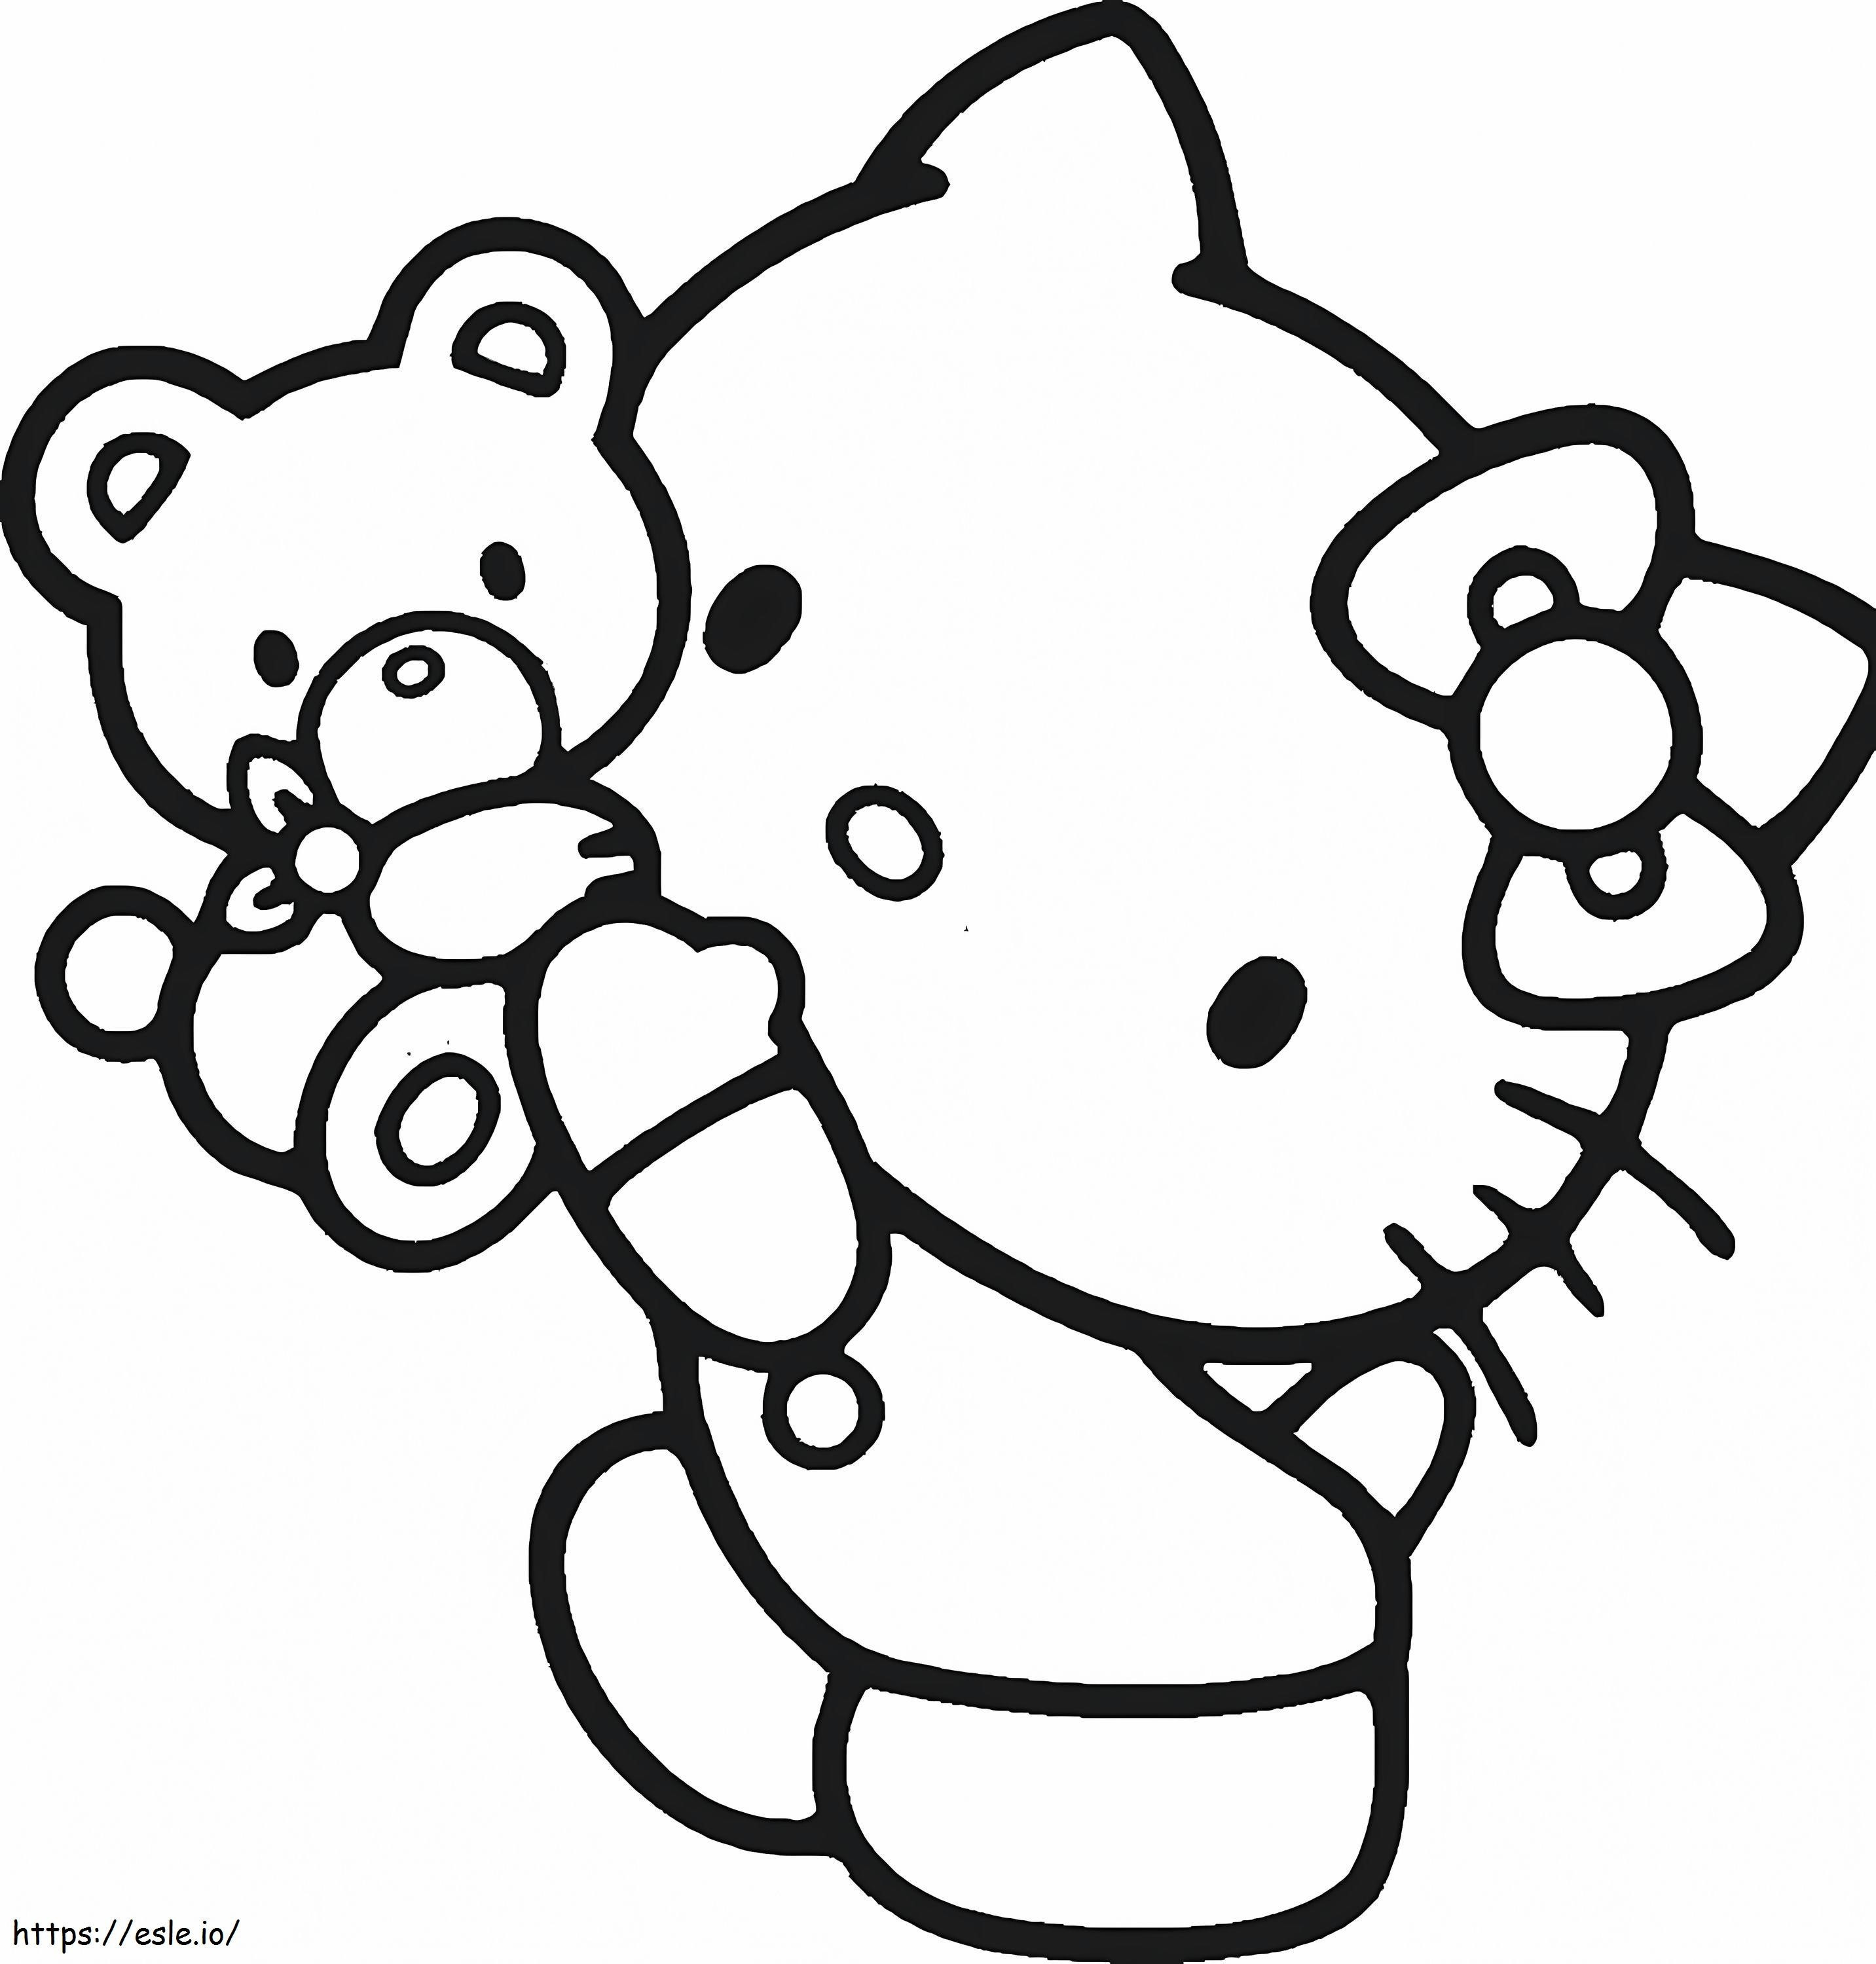 Hello Kitty e ursinho para colorir - Imprimir Desenhos